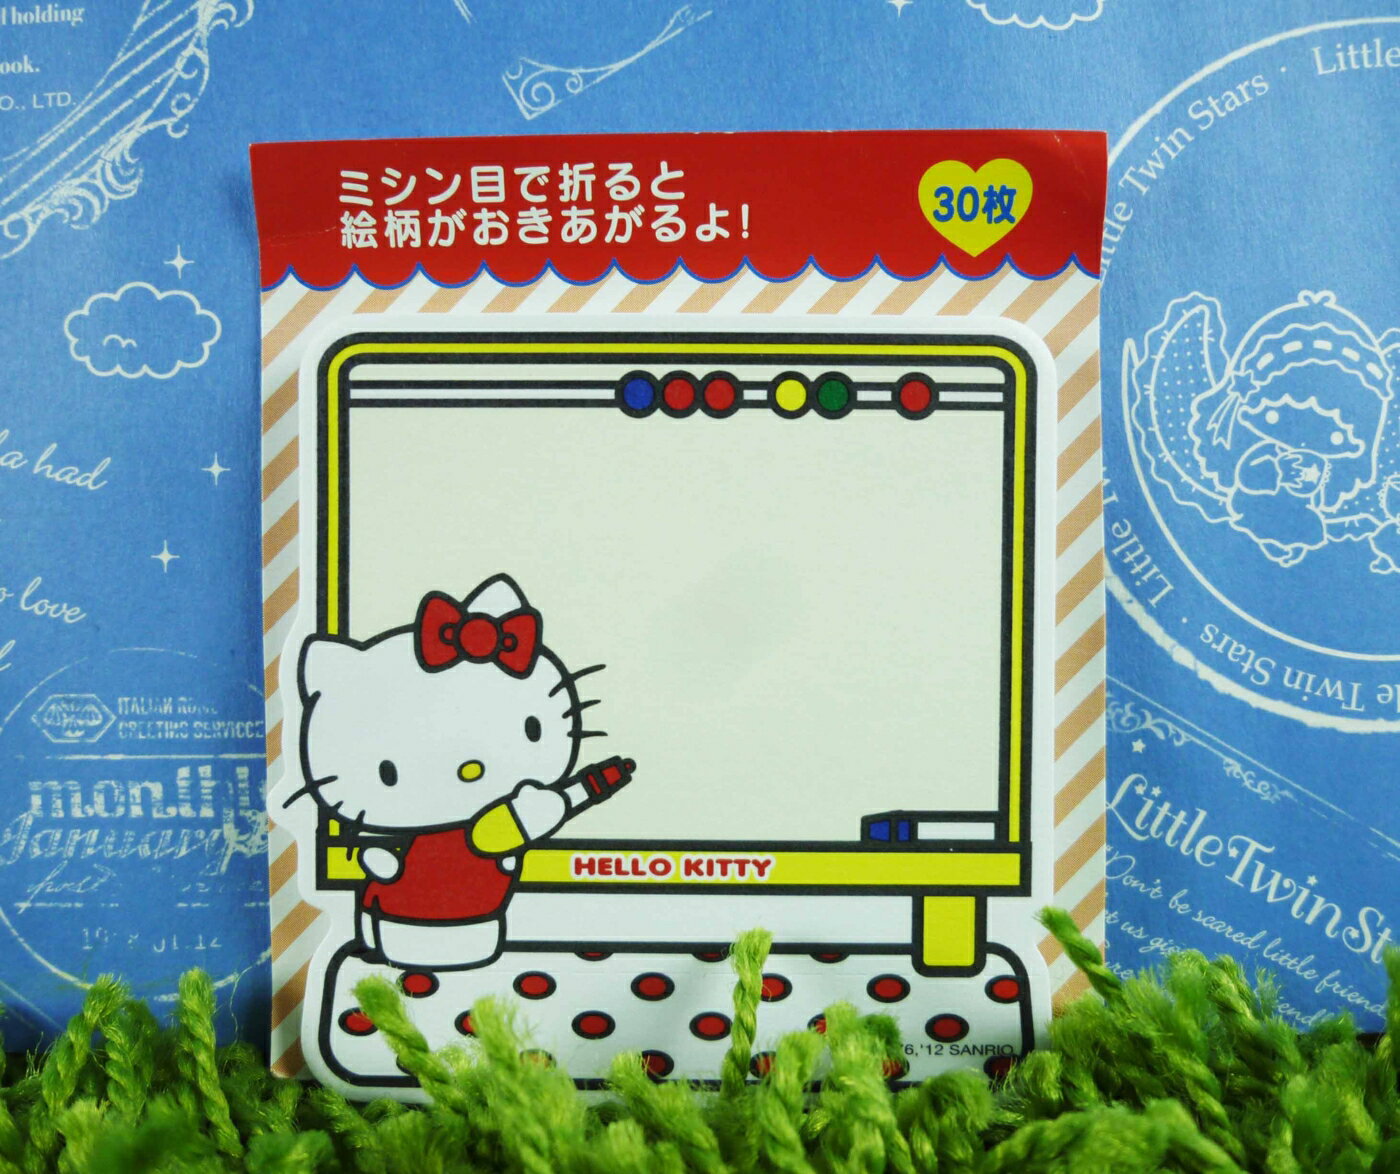 【震撼精品百貨】Hello Kitty 凱蒂貓 便利貼 站【共1款】 震撼日式精品百貨